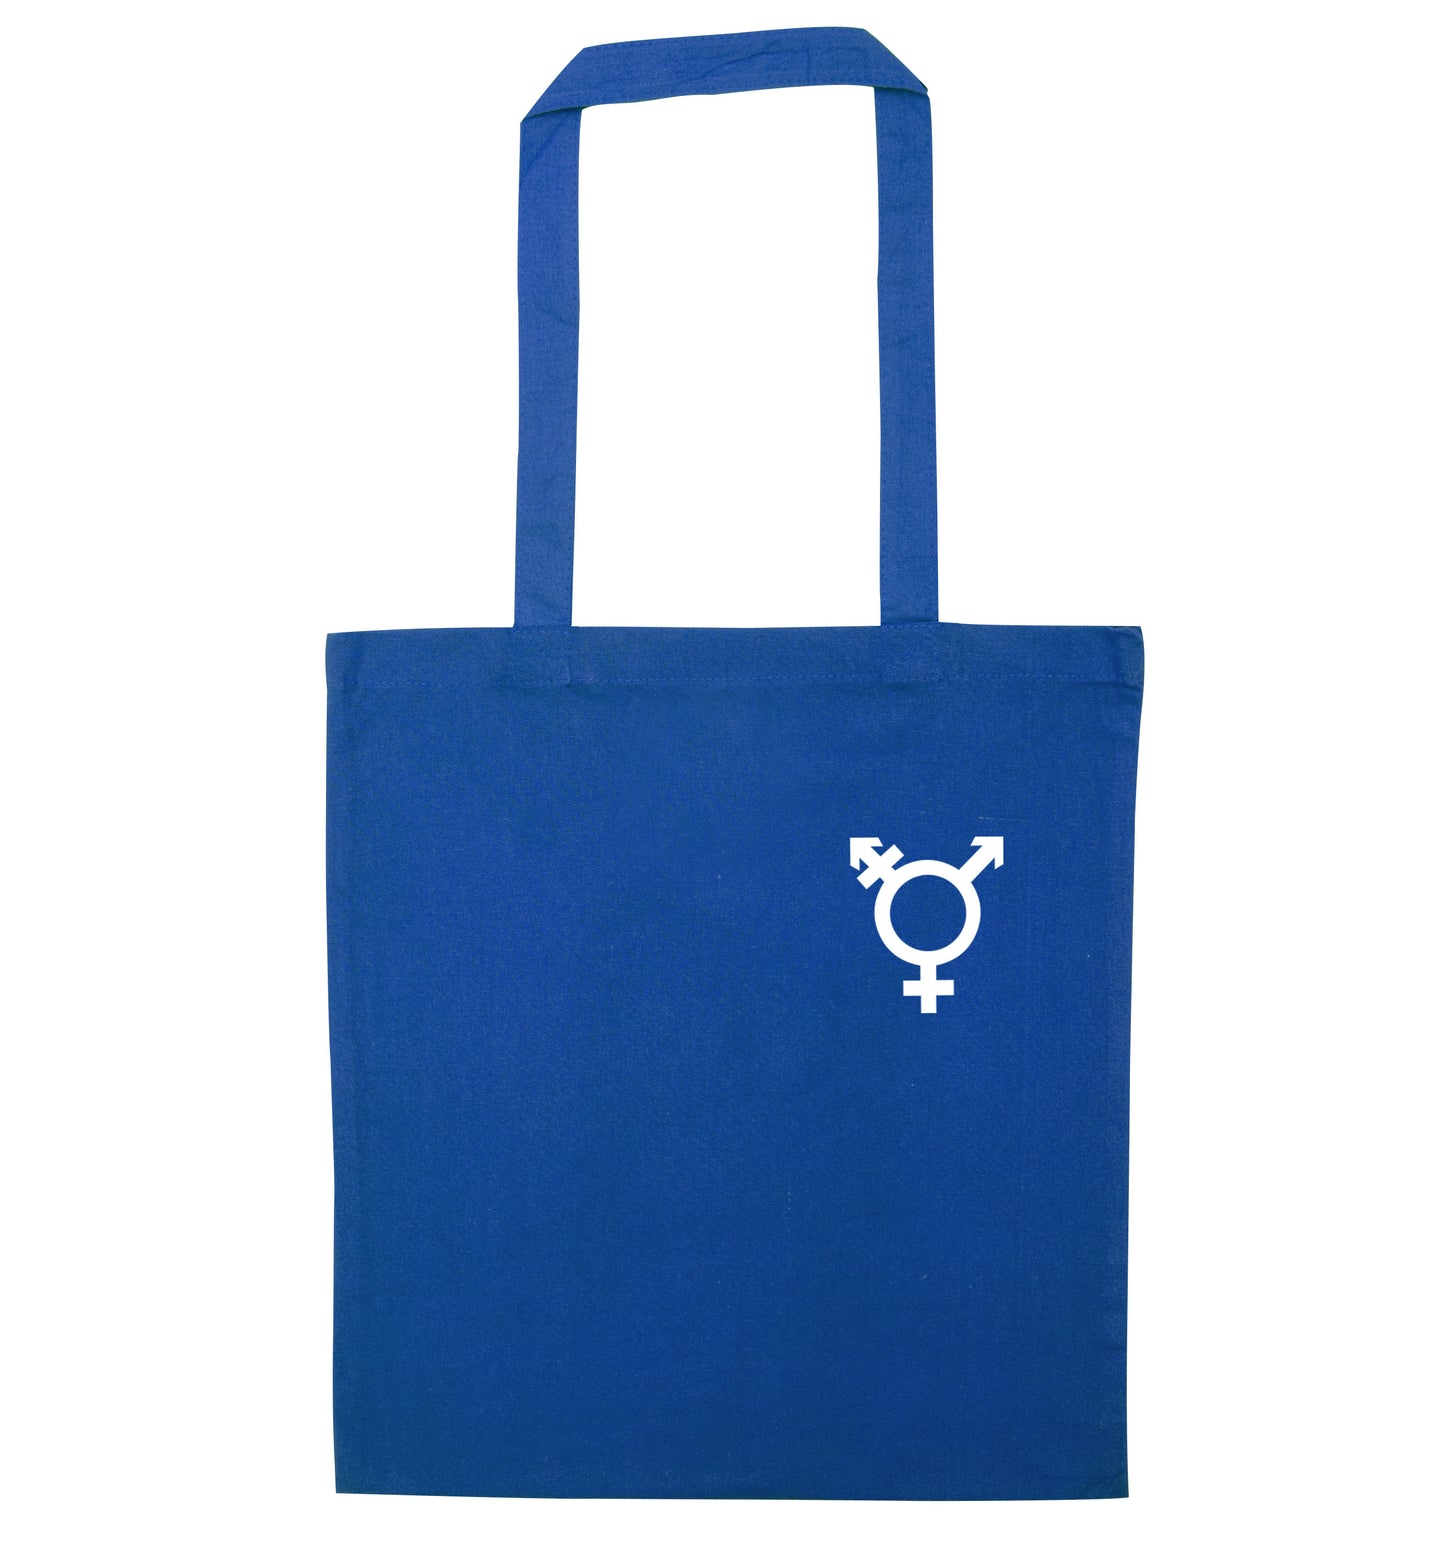 Trans gender symbol pocket blue tote bag